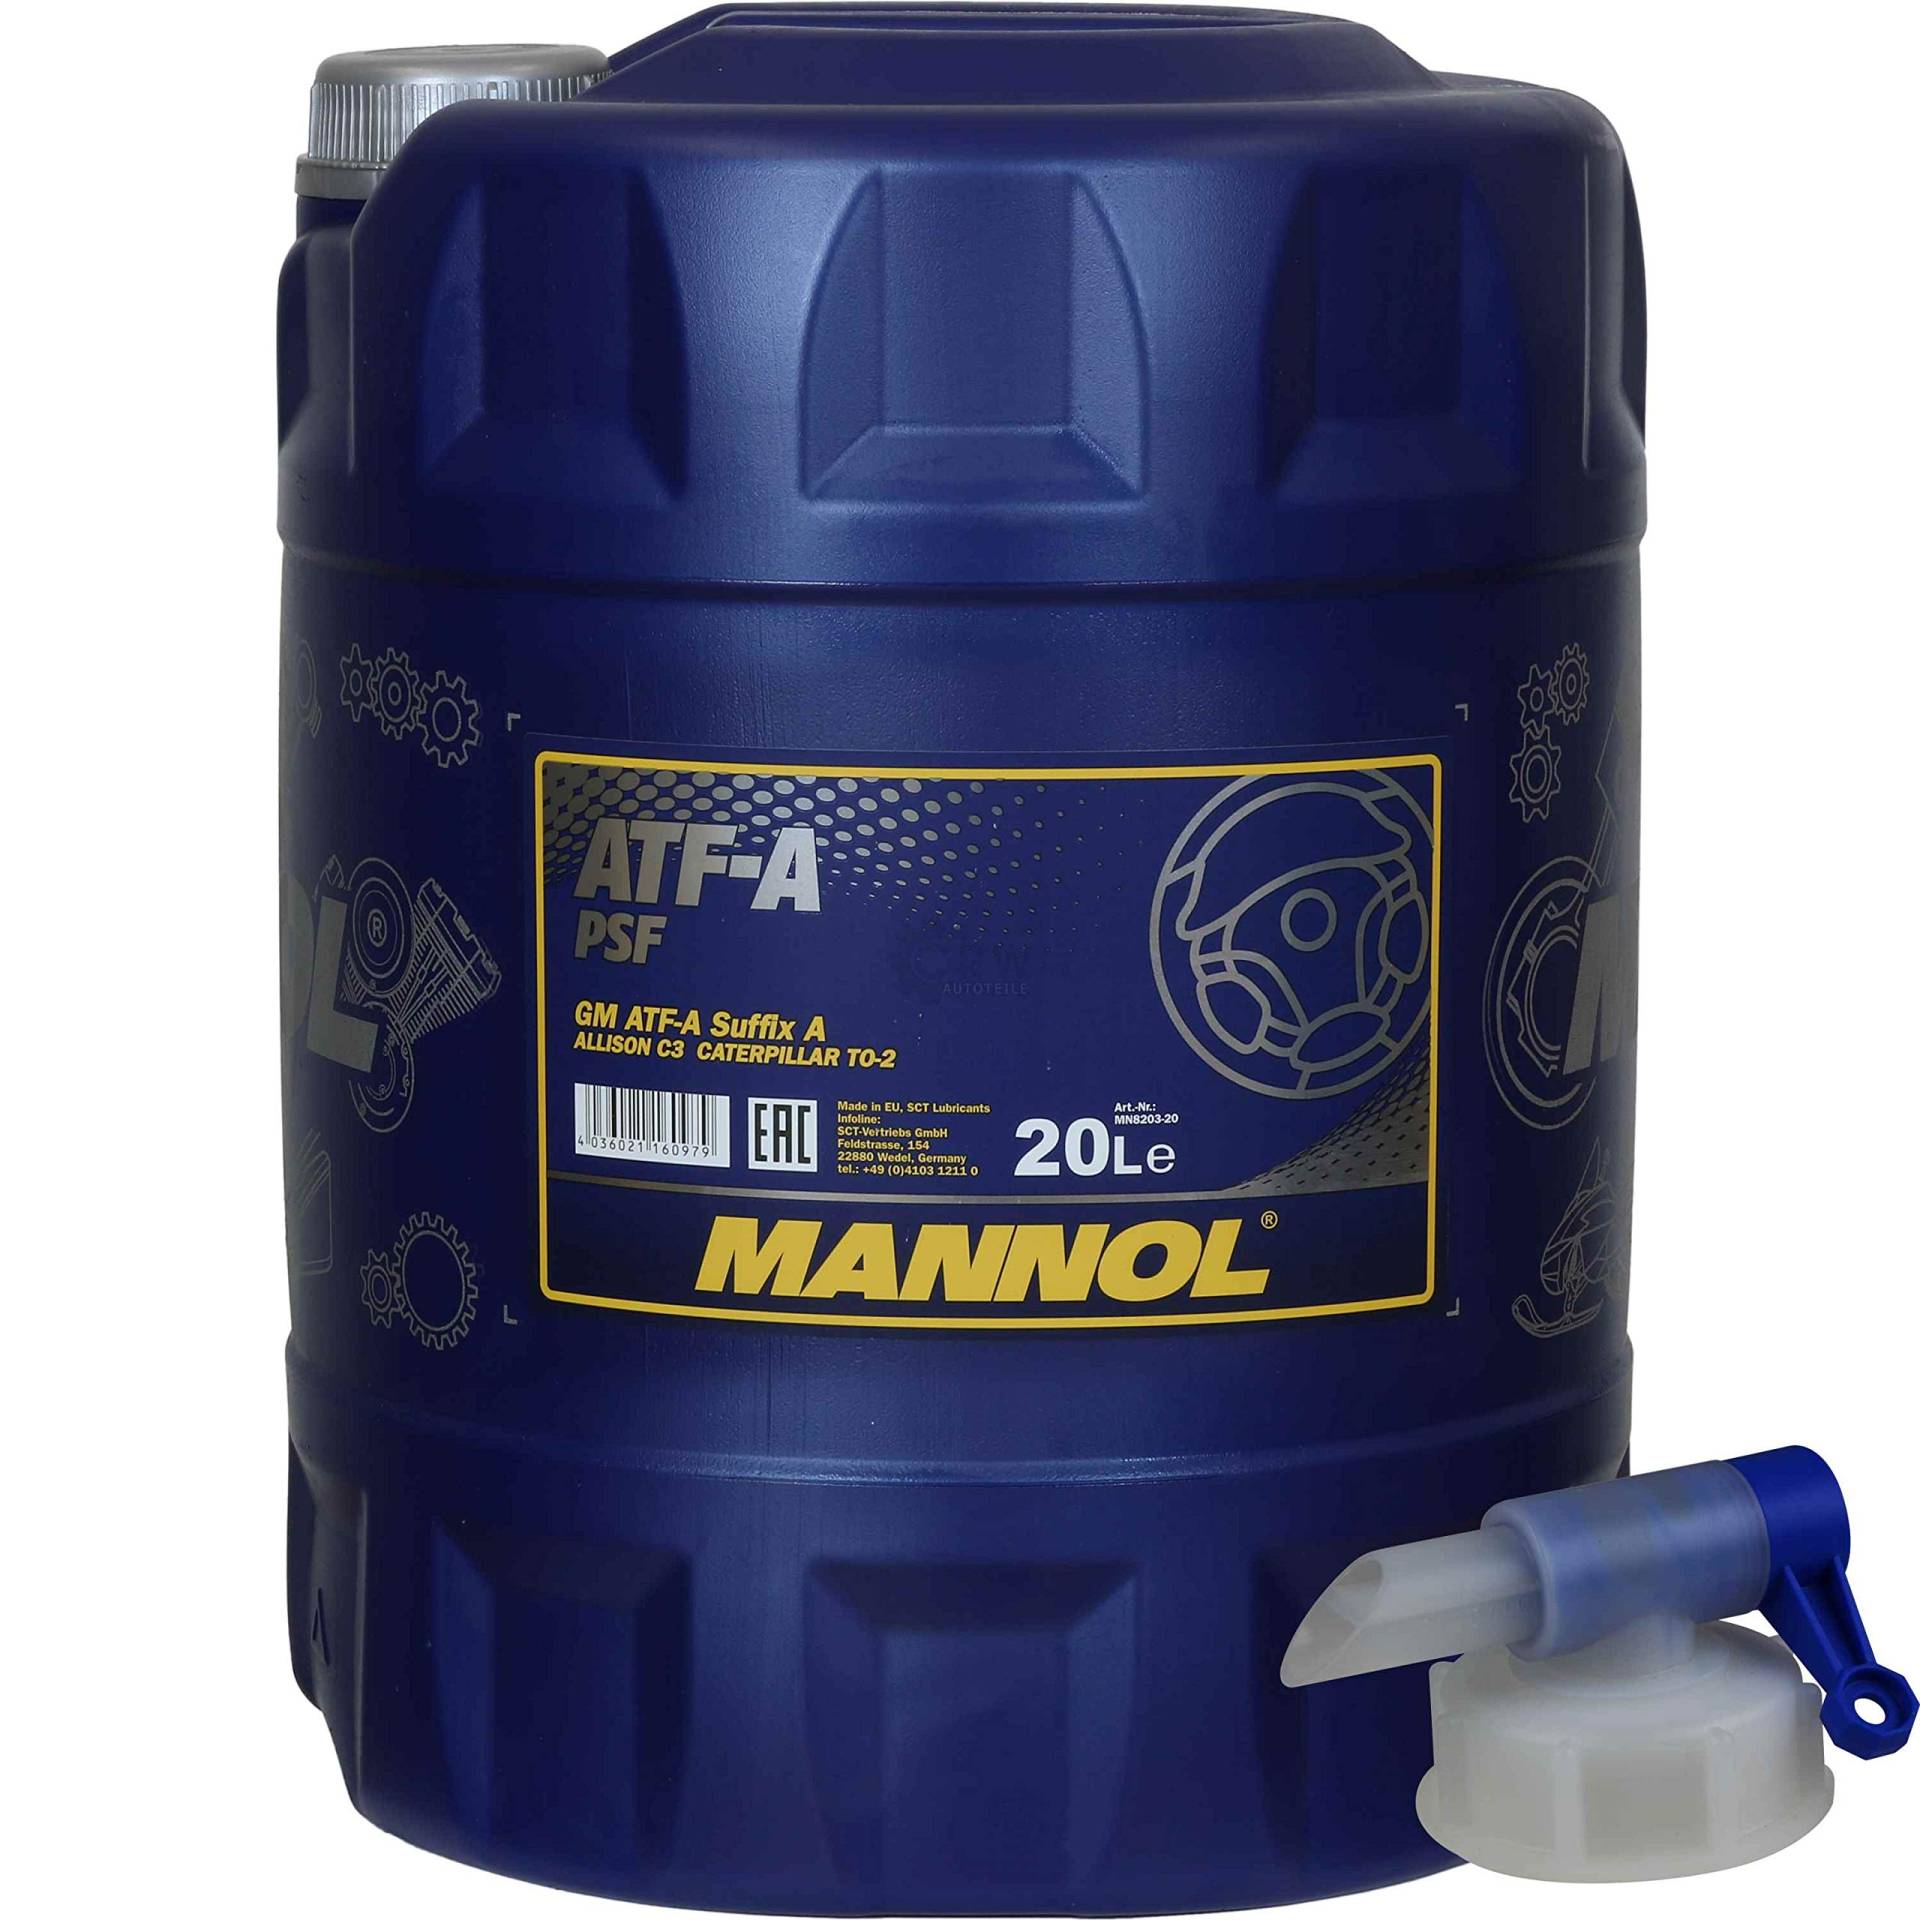 20 Liter MANNOL Hydrauliköl ATF-A PSF Hydraulic Fluid Oil inkl. Auslaufhahn von Diederichs